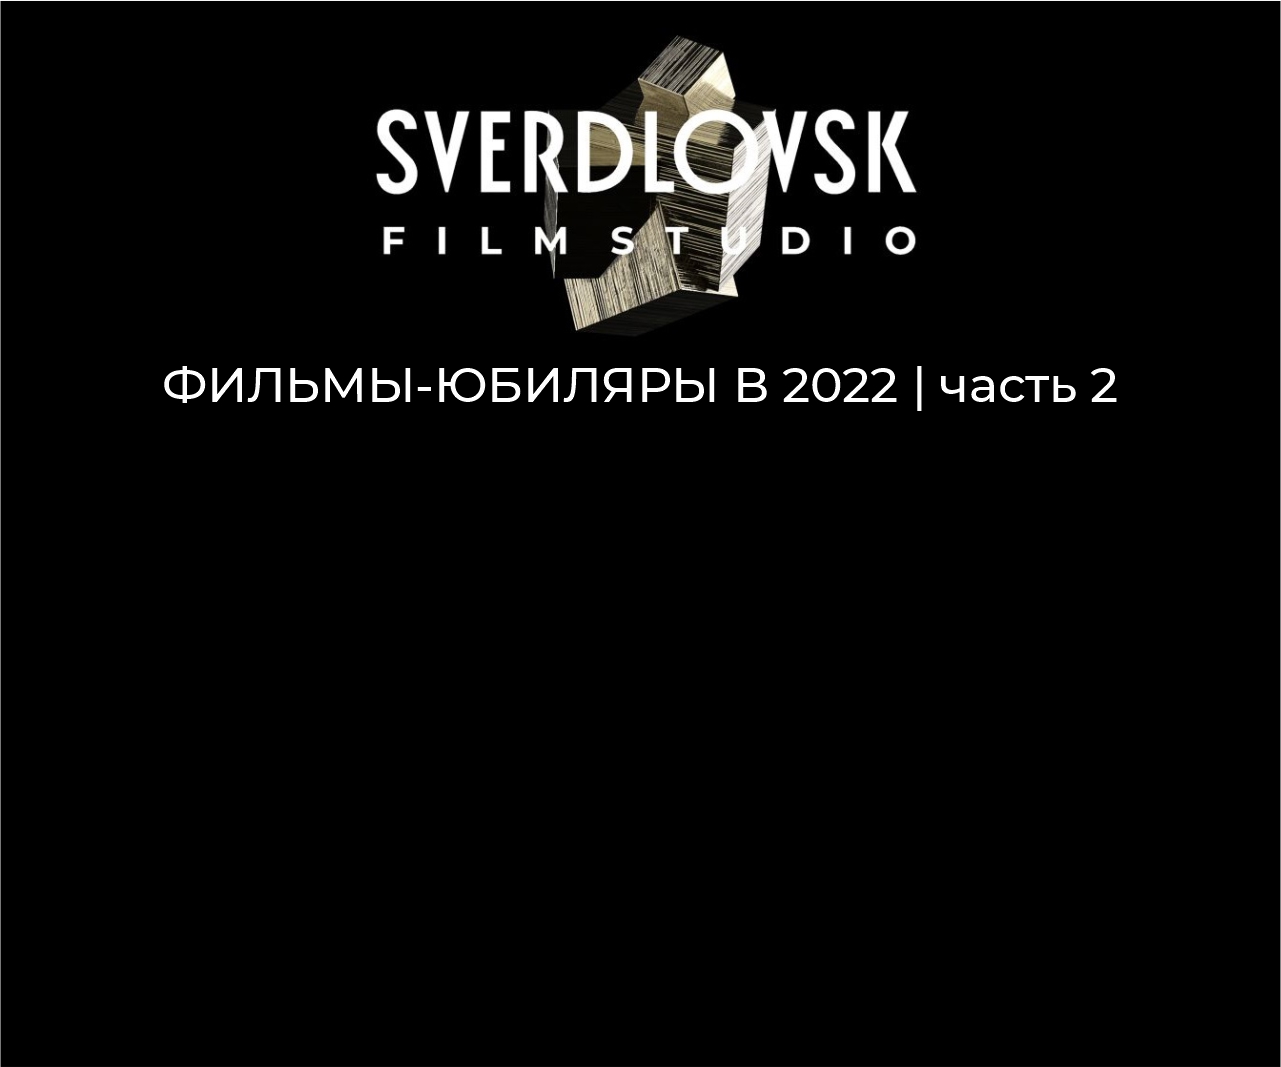 Фильмы Свердловской киностудии, которые отмечают 10, 20 и 30 лет в 2022 году